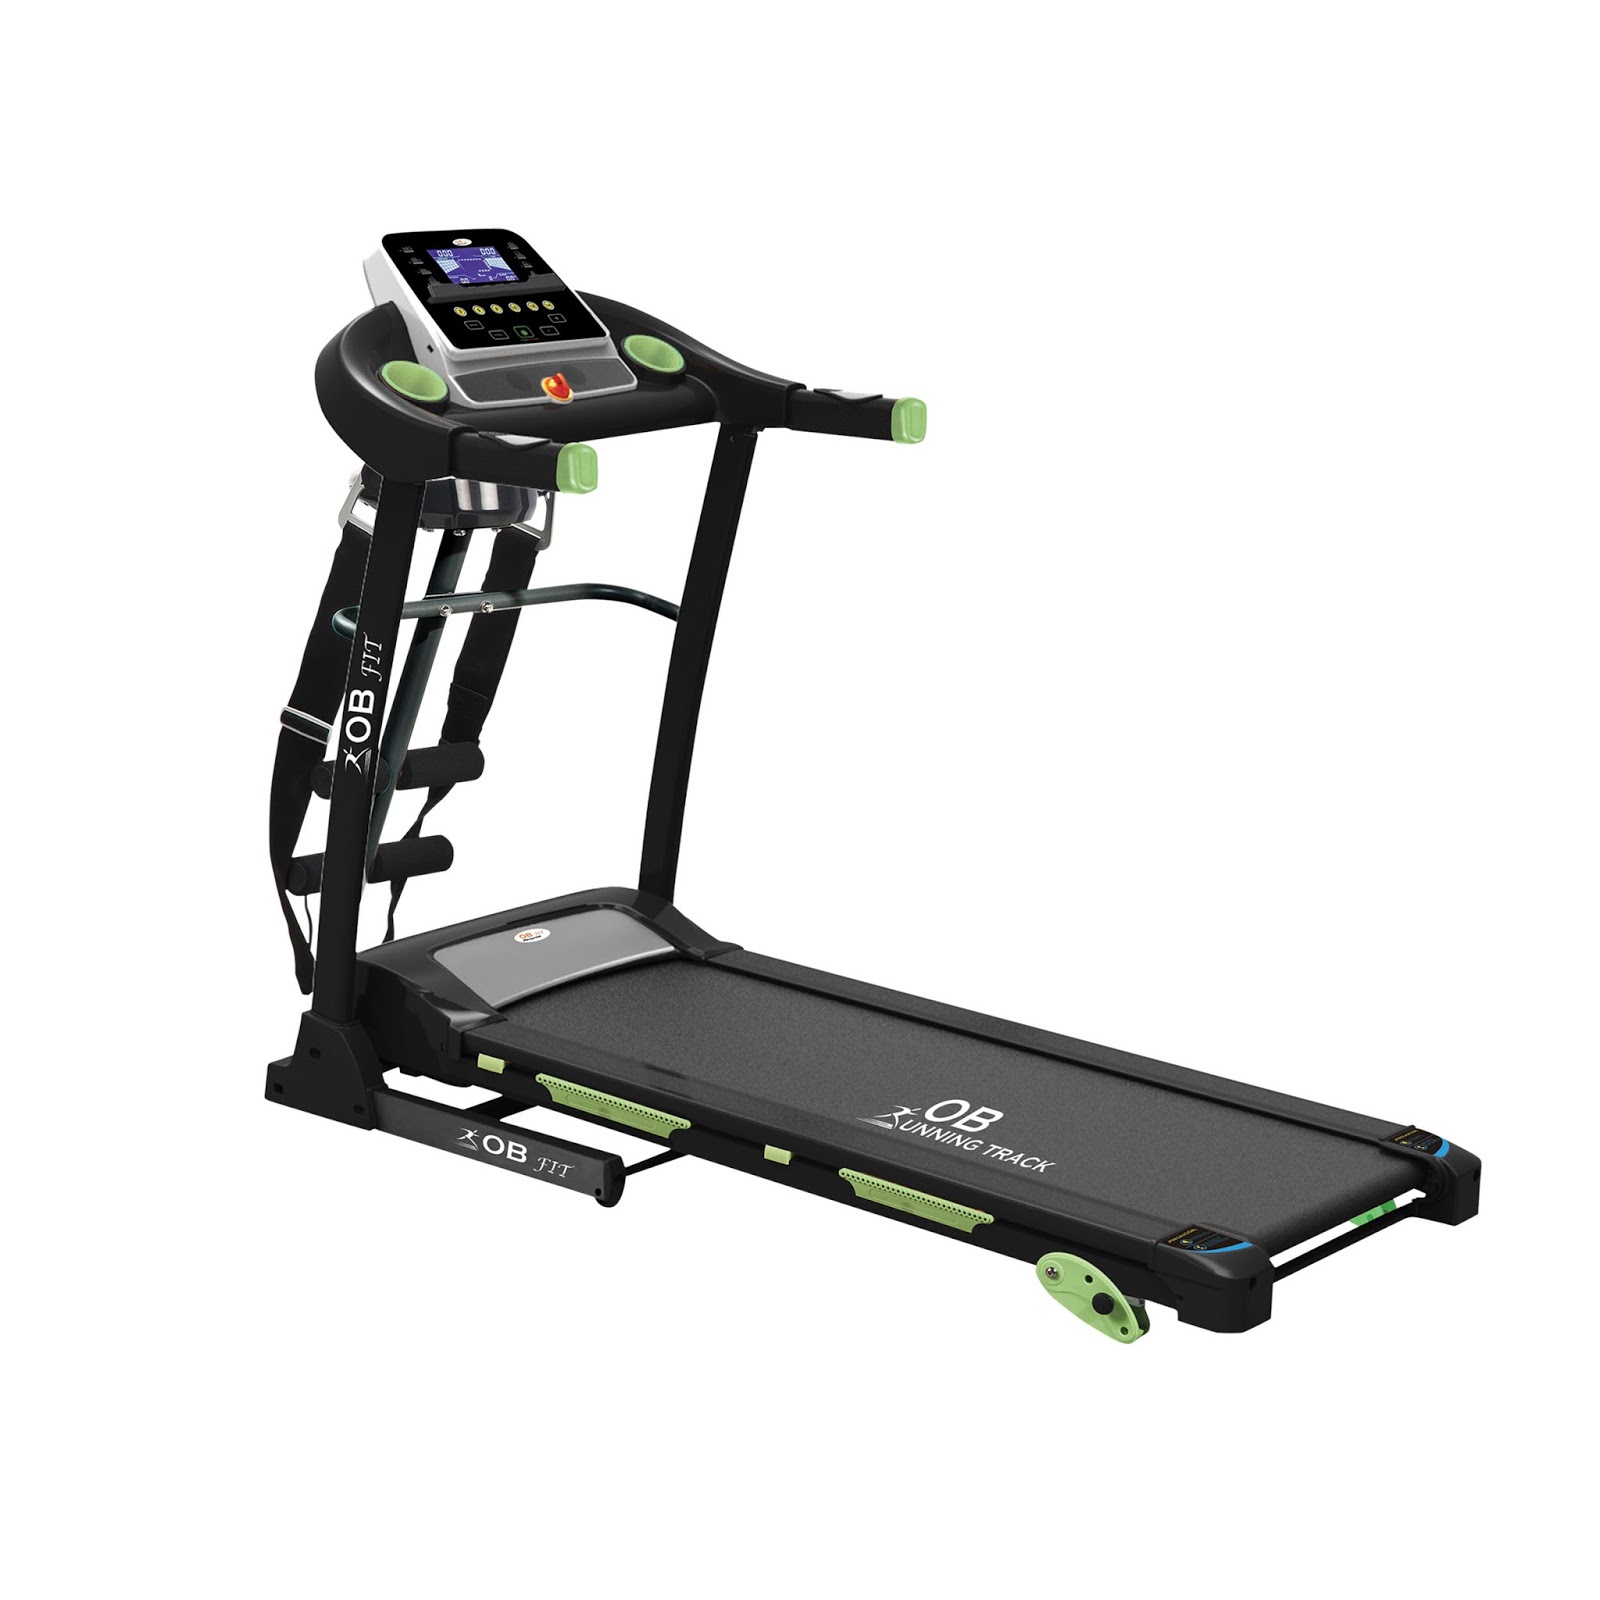 Harga Alat Fitness Treadmill Merk Treadmill Yang Bagus 